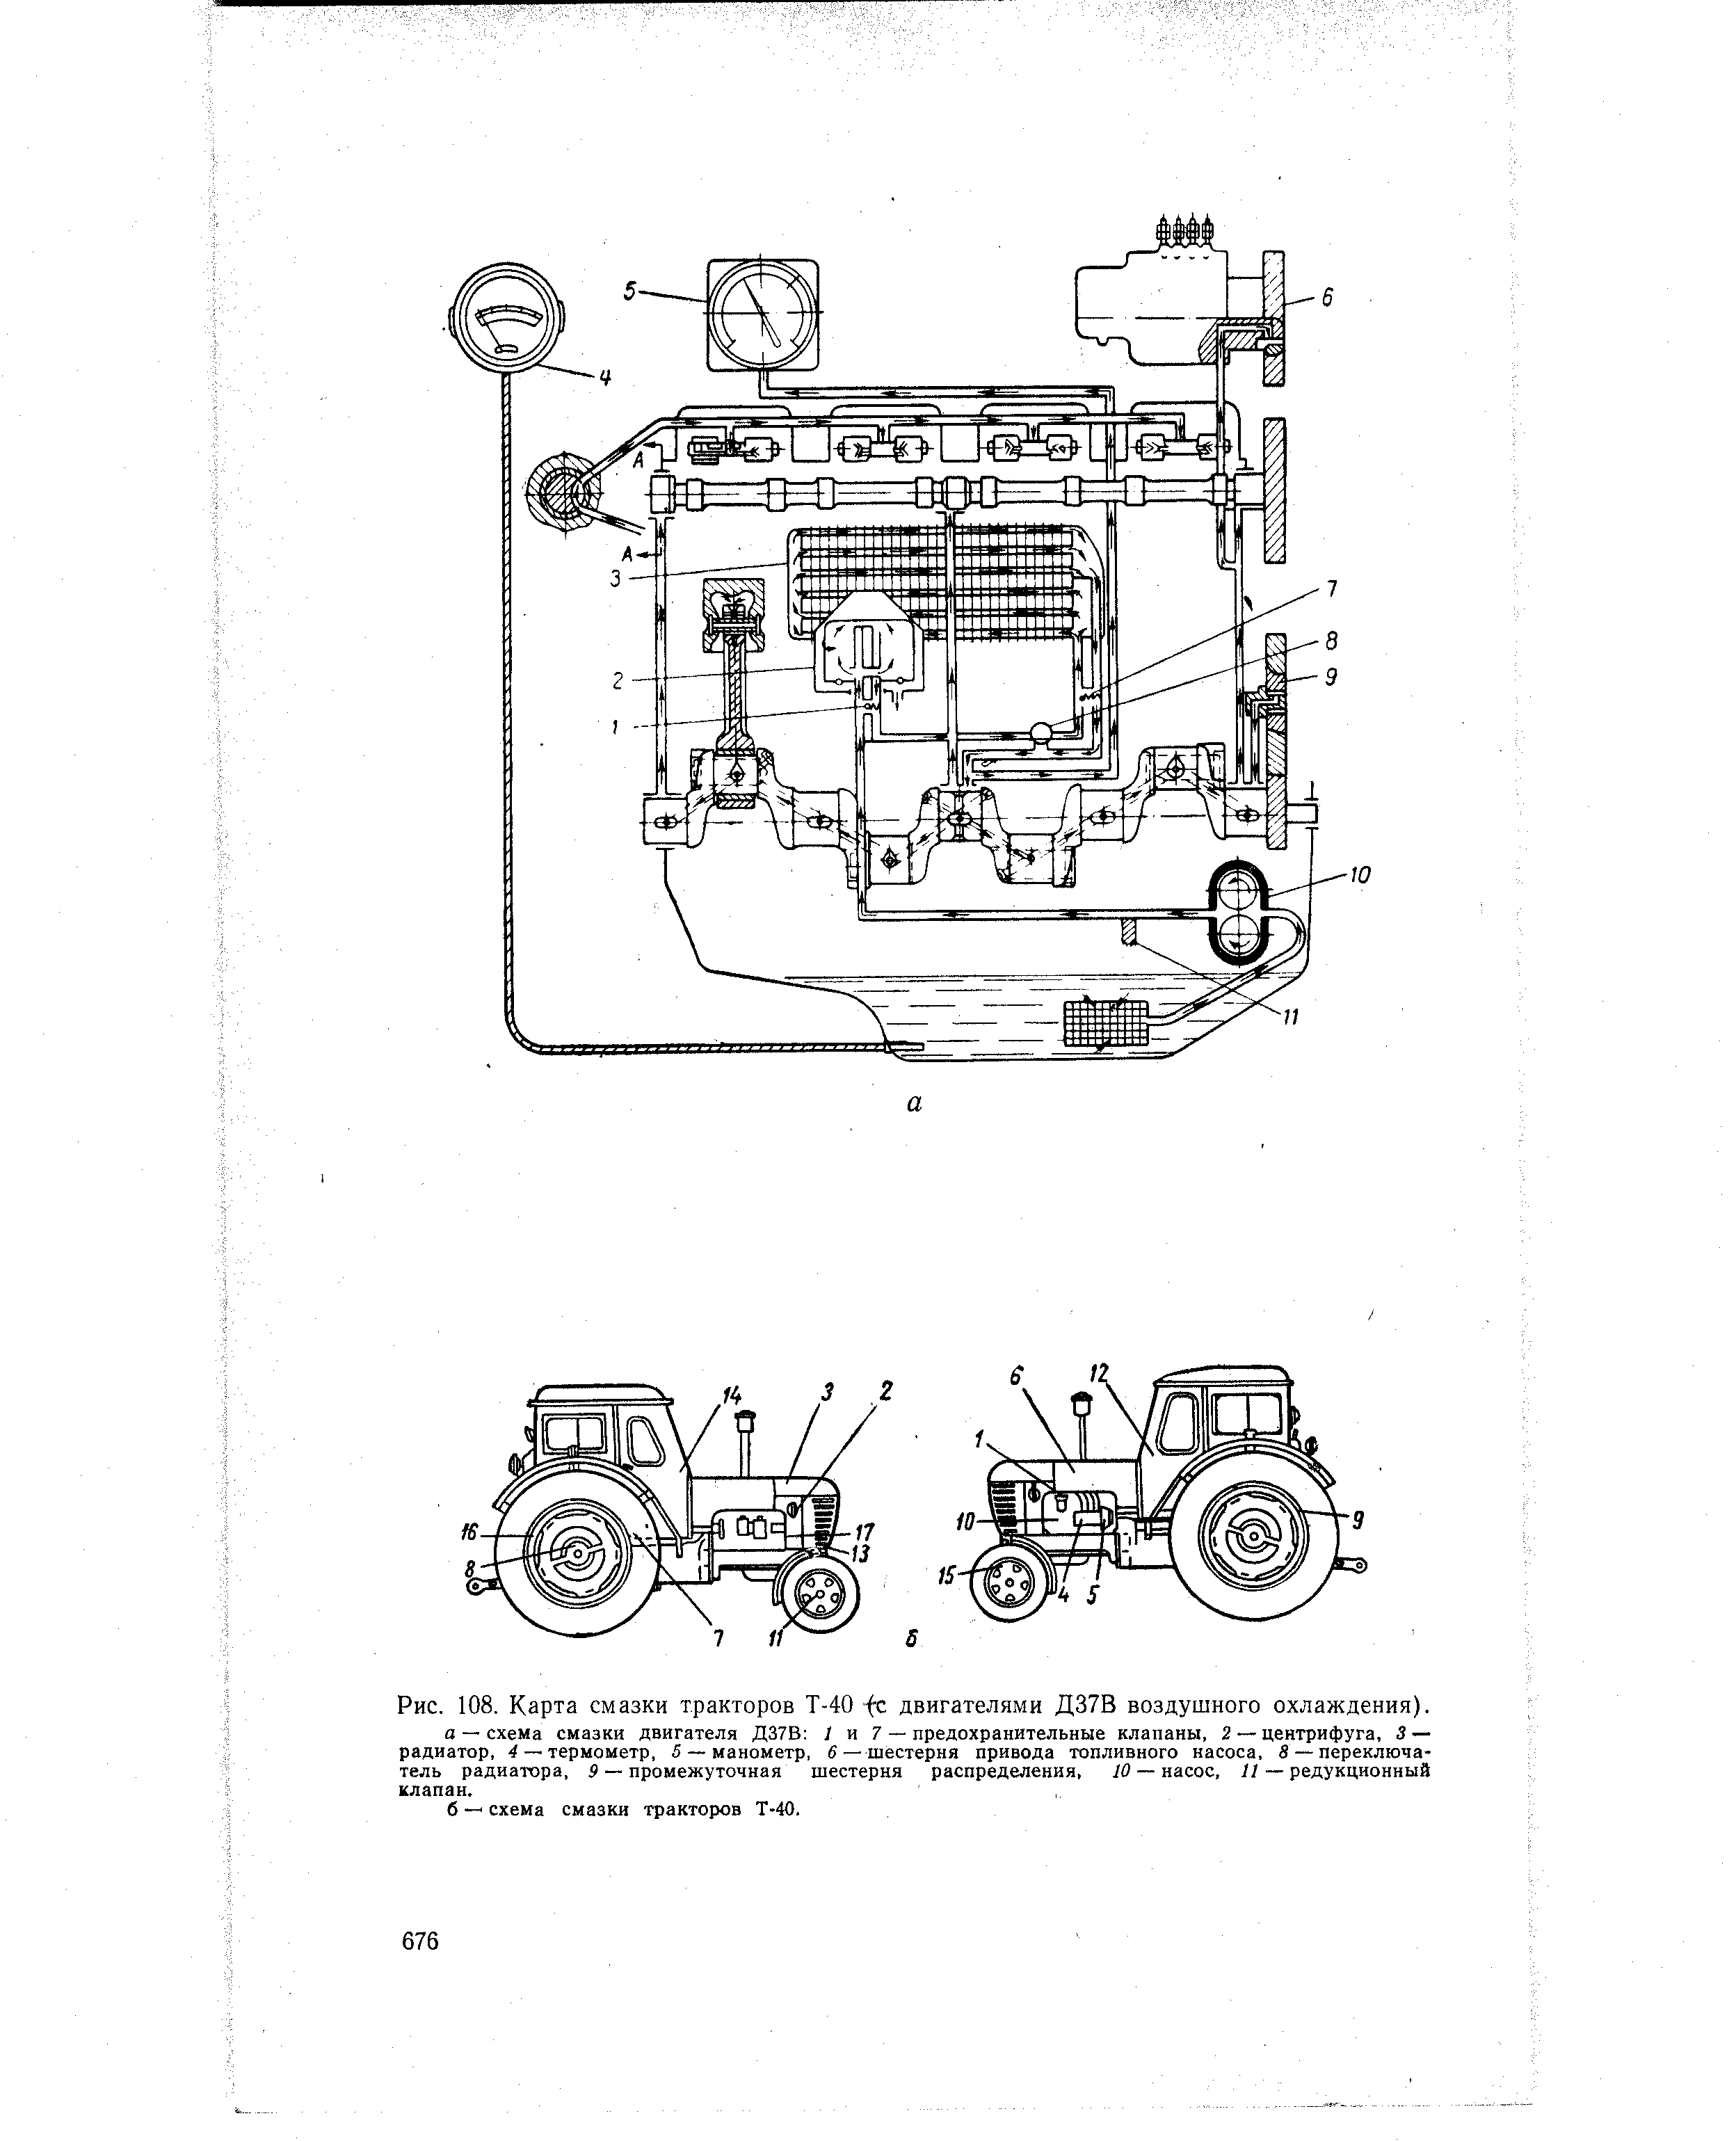 Рис. 108. Карта смазки тракторов Т-40 fe двигателями Д37В воздушного охлаждения).
